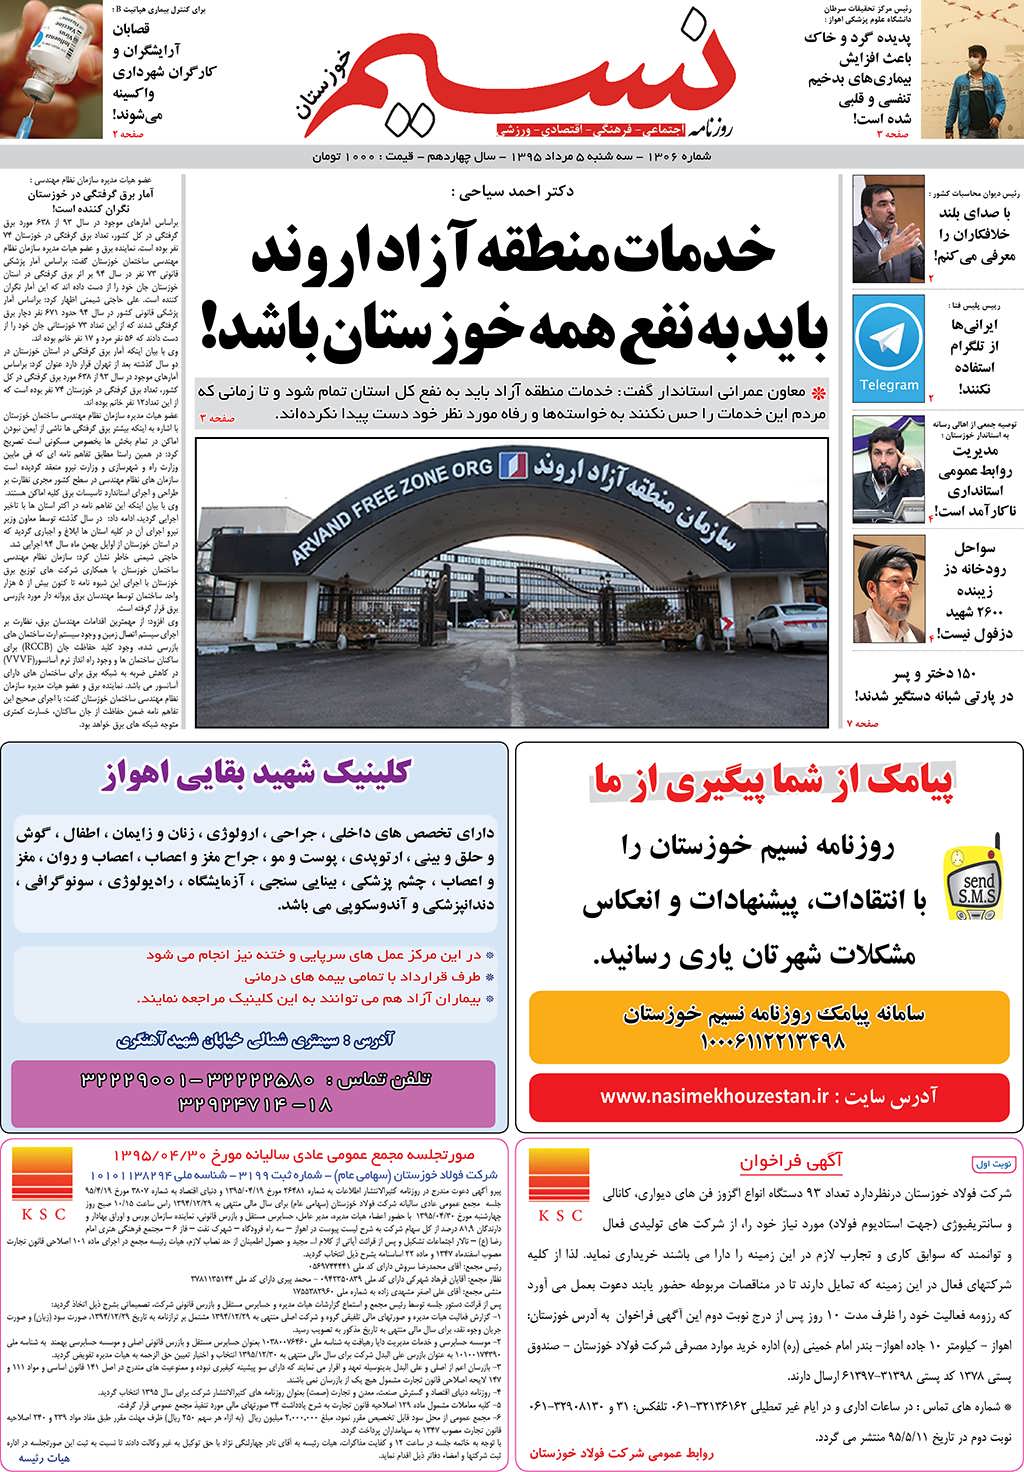 صفحه اصلی روزنامه نسیم شماره 1306